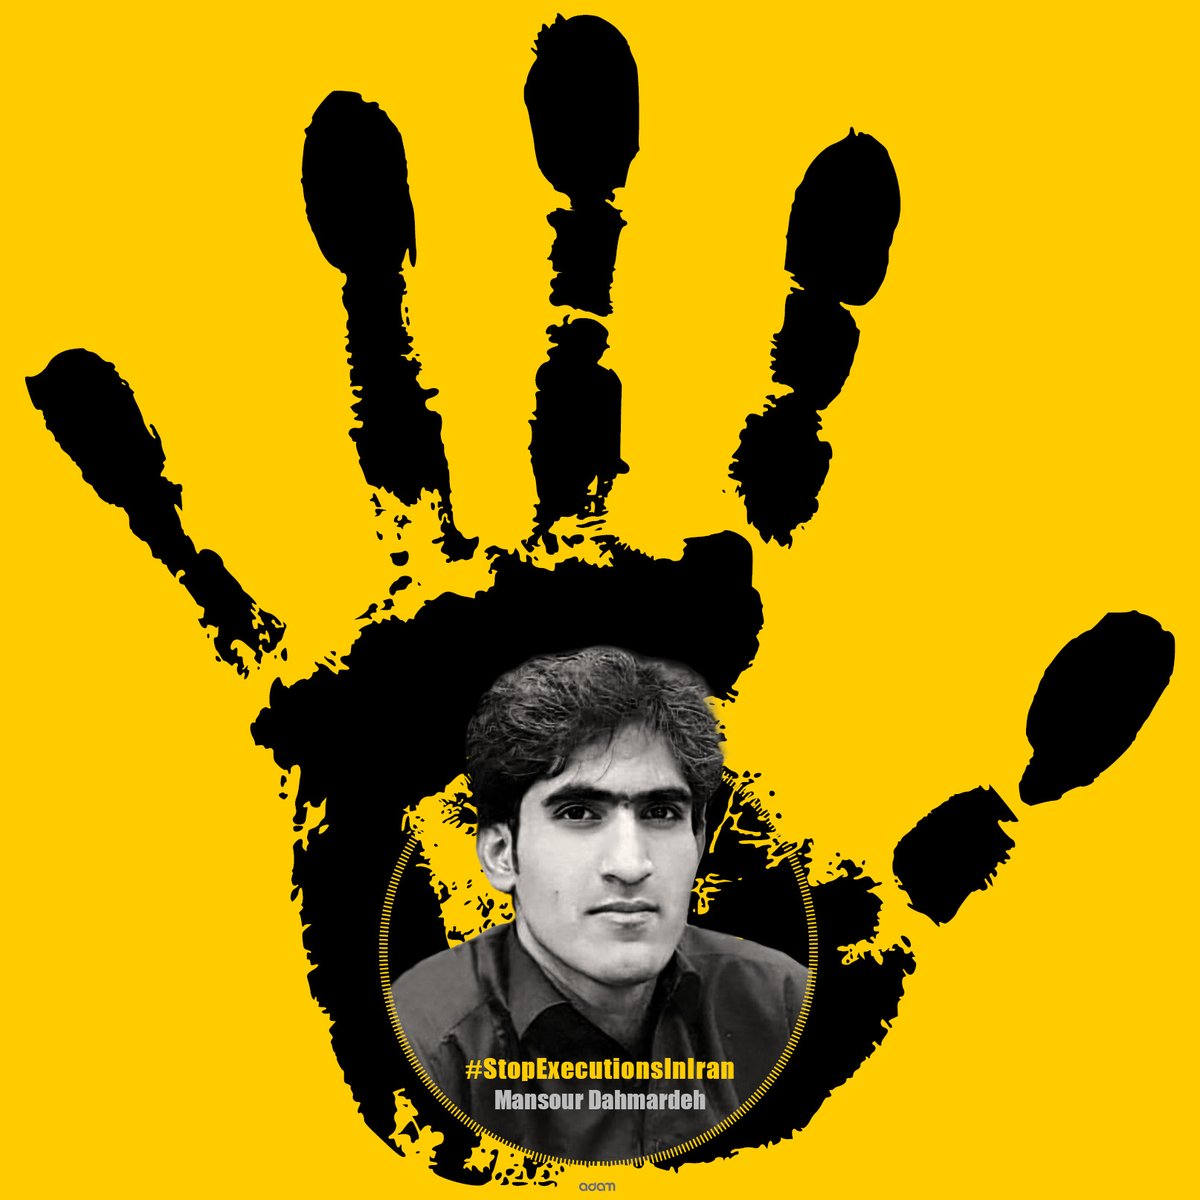 اعدام قتل عمد حکومتی‌ست
#منصور_دهمرده
#نه_به_اعدام
#MansourDahmardeh
#StopExecutionsInIran